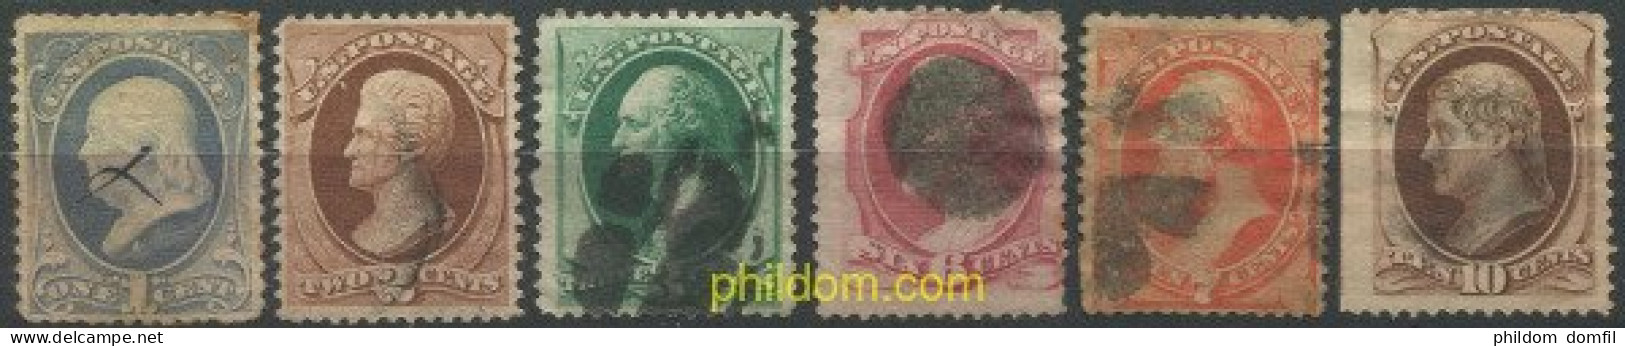 707332 USED ESTADOS UNIDOS 1870 PRESIDENTES Y POLITICOS - Unused Stamps